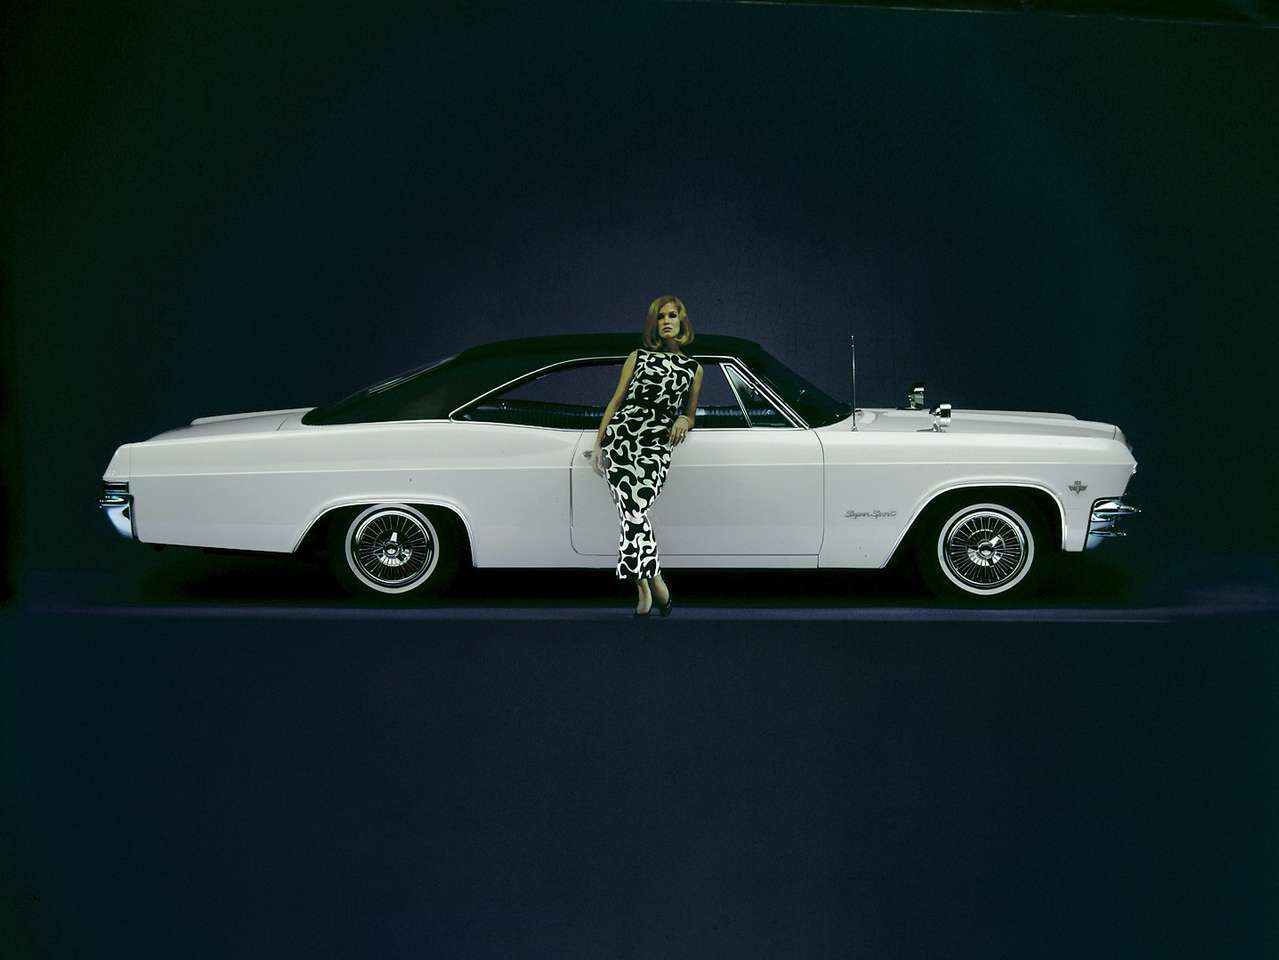 1965 Chevrolet Impala Super Sport online puzzle